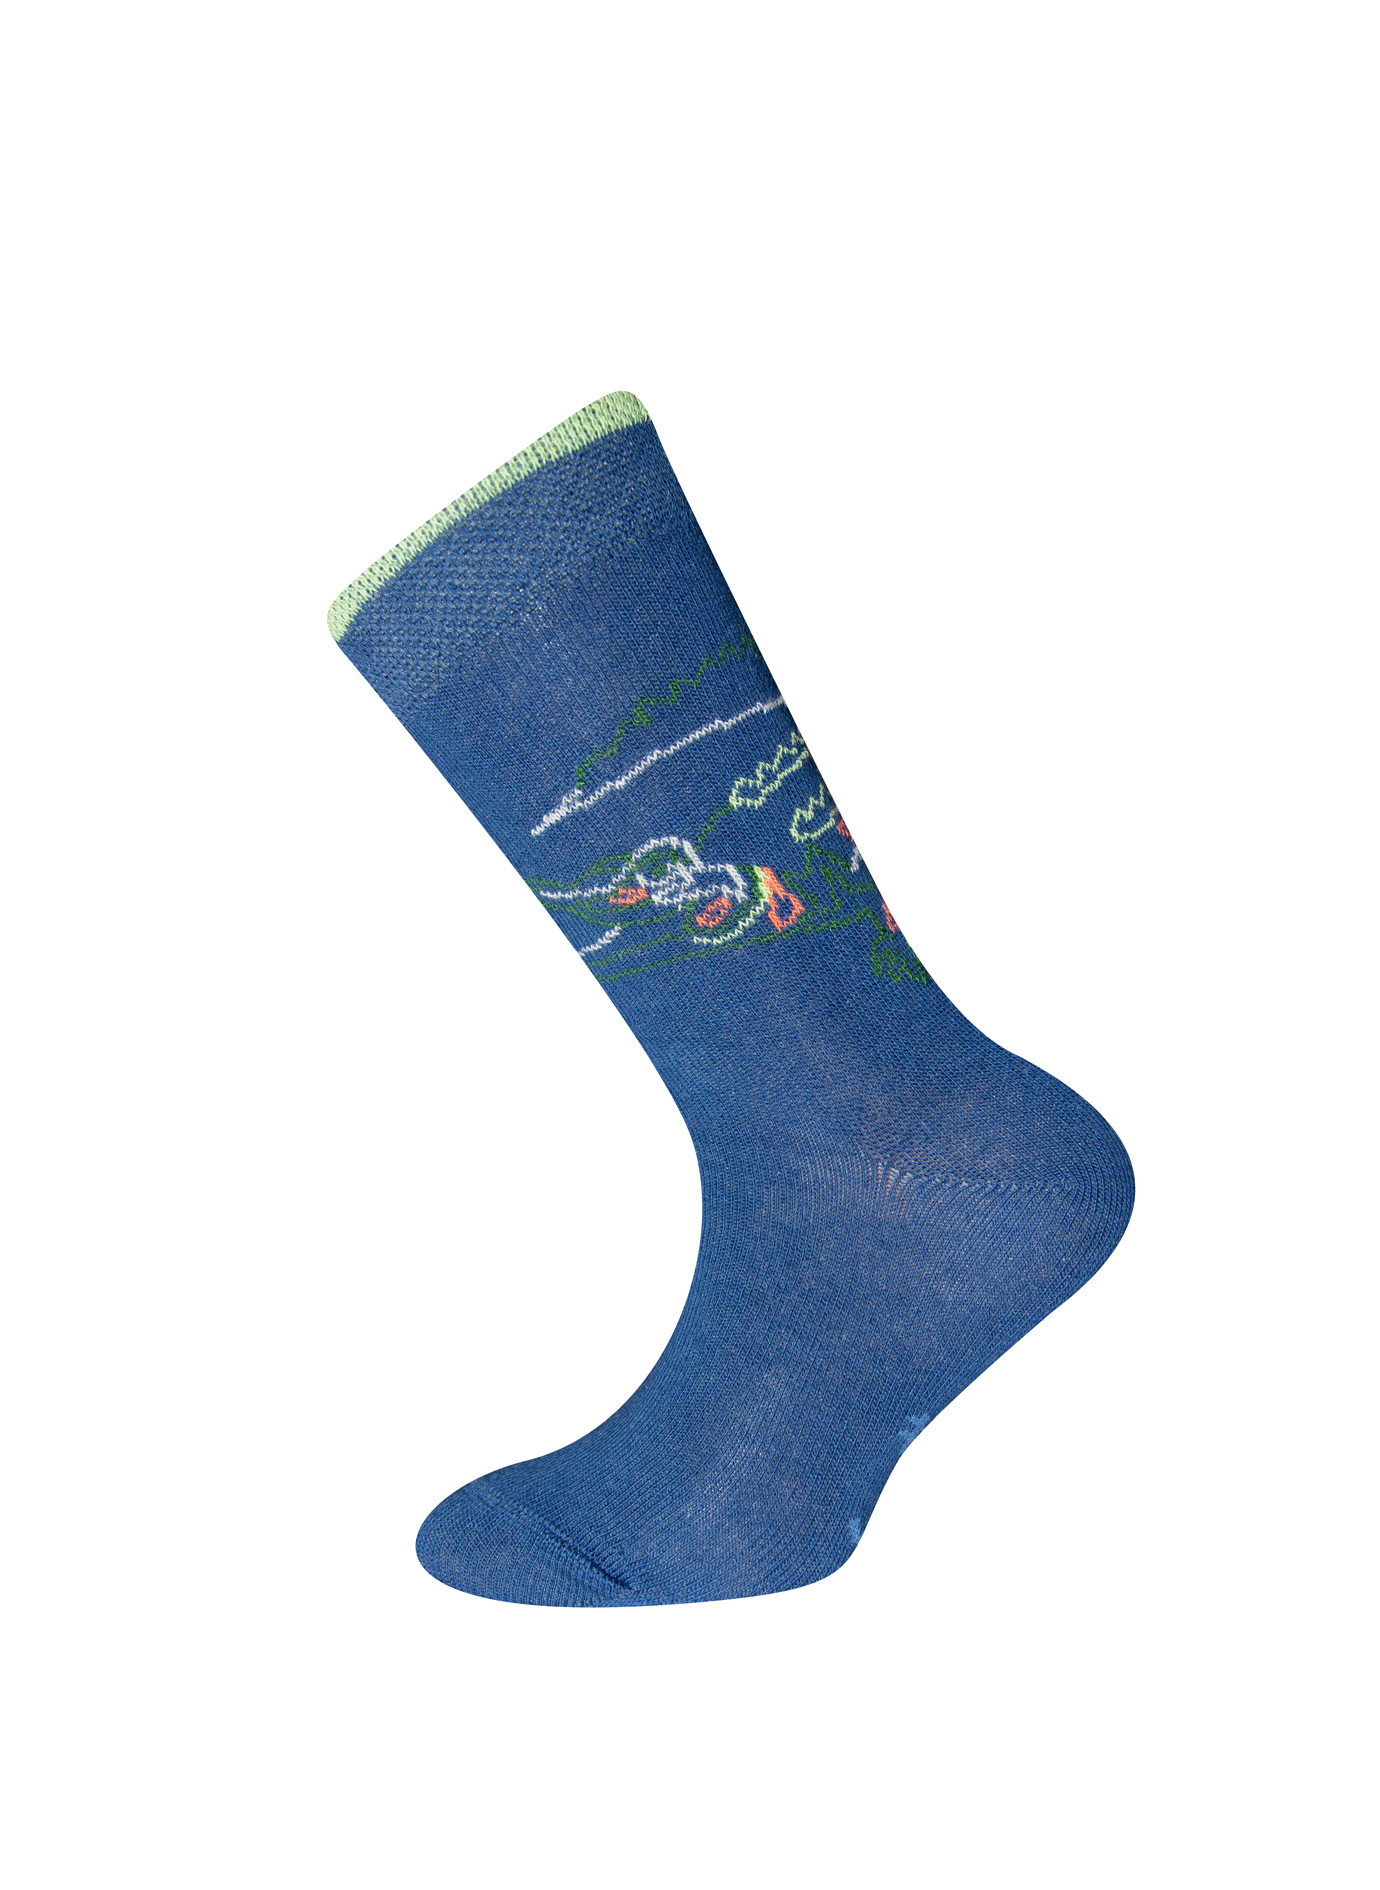 Jungen-Socken (Doppelpack) Blau und Grün